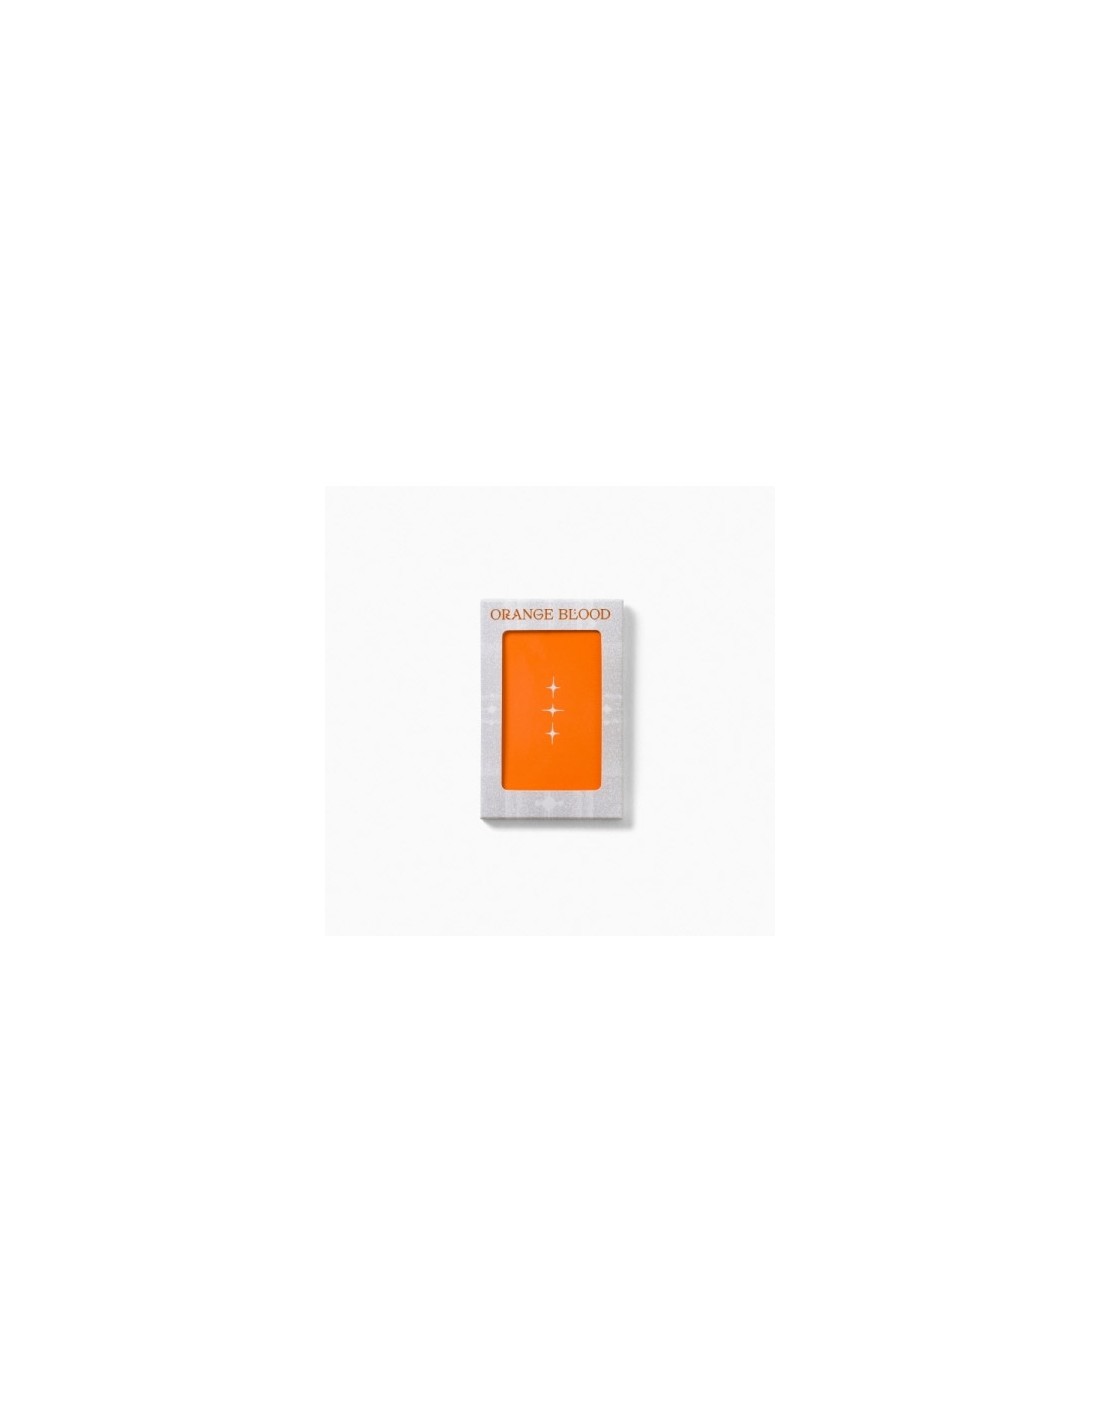 Smart Album] ENHYPEN 5th Mini Album - ORANGE BLOOD Weverse Albums